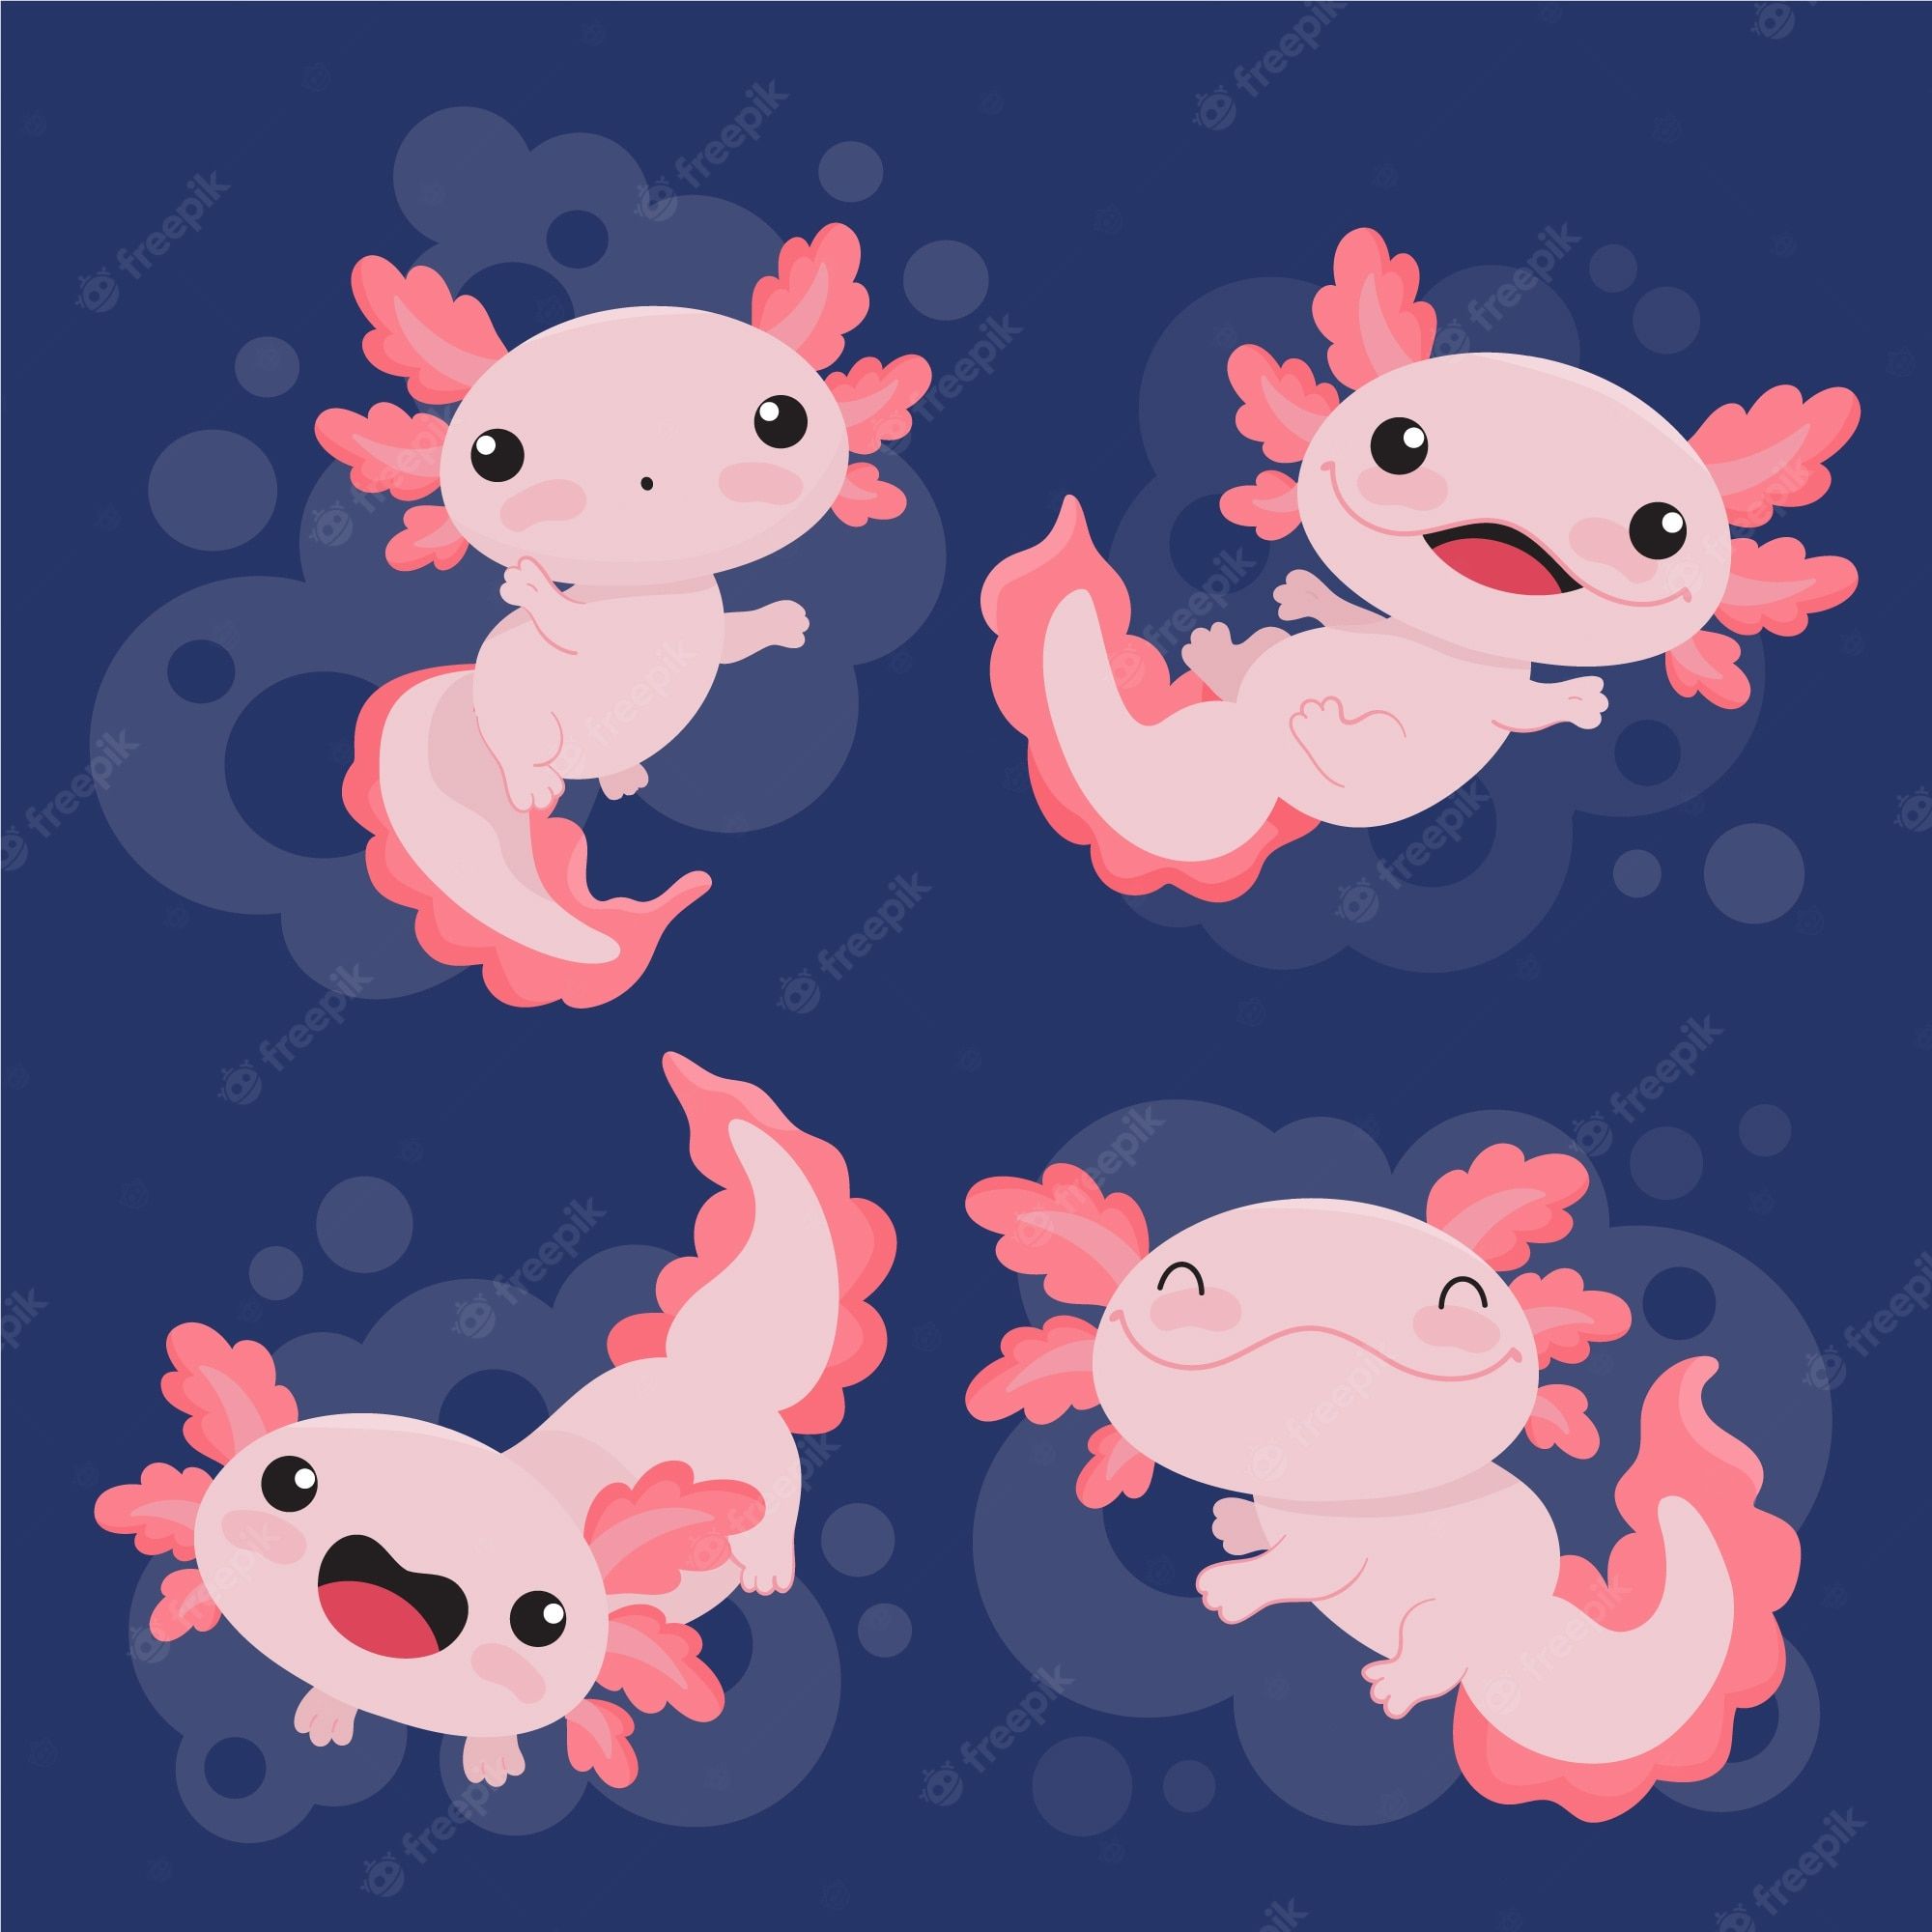 Cute Axolotl Image